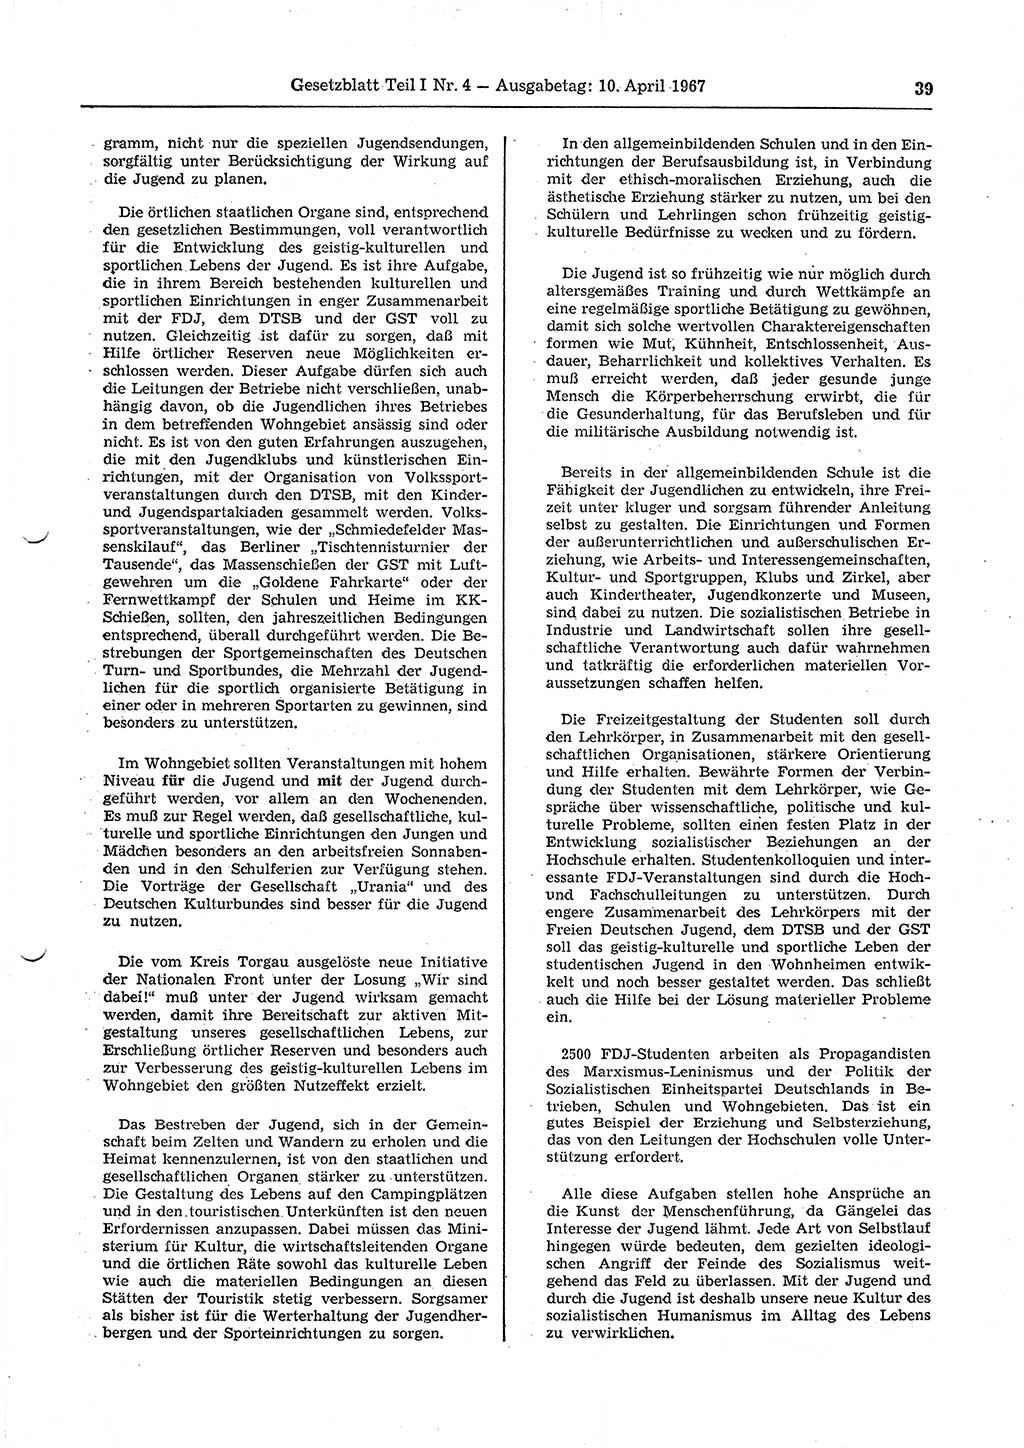 Gesetzblatt (GBl.) der Deutschen Demokratischen Republik (DDR) Teil Ⅰ 1967, Seite 39 (GBl. DDR Ⅰ 1967, S. 39)